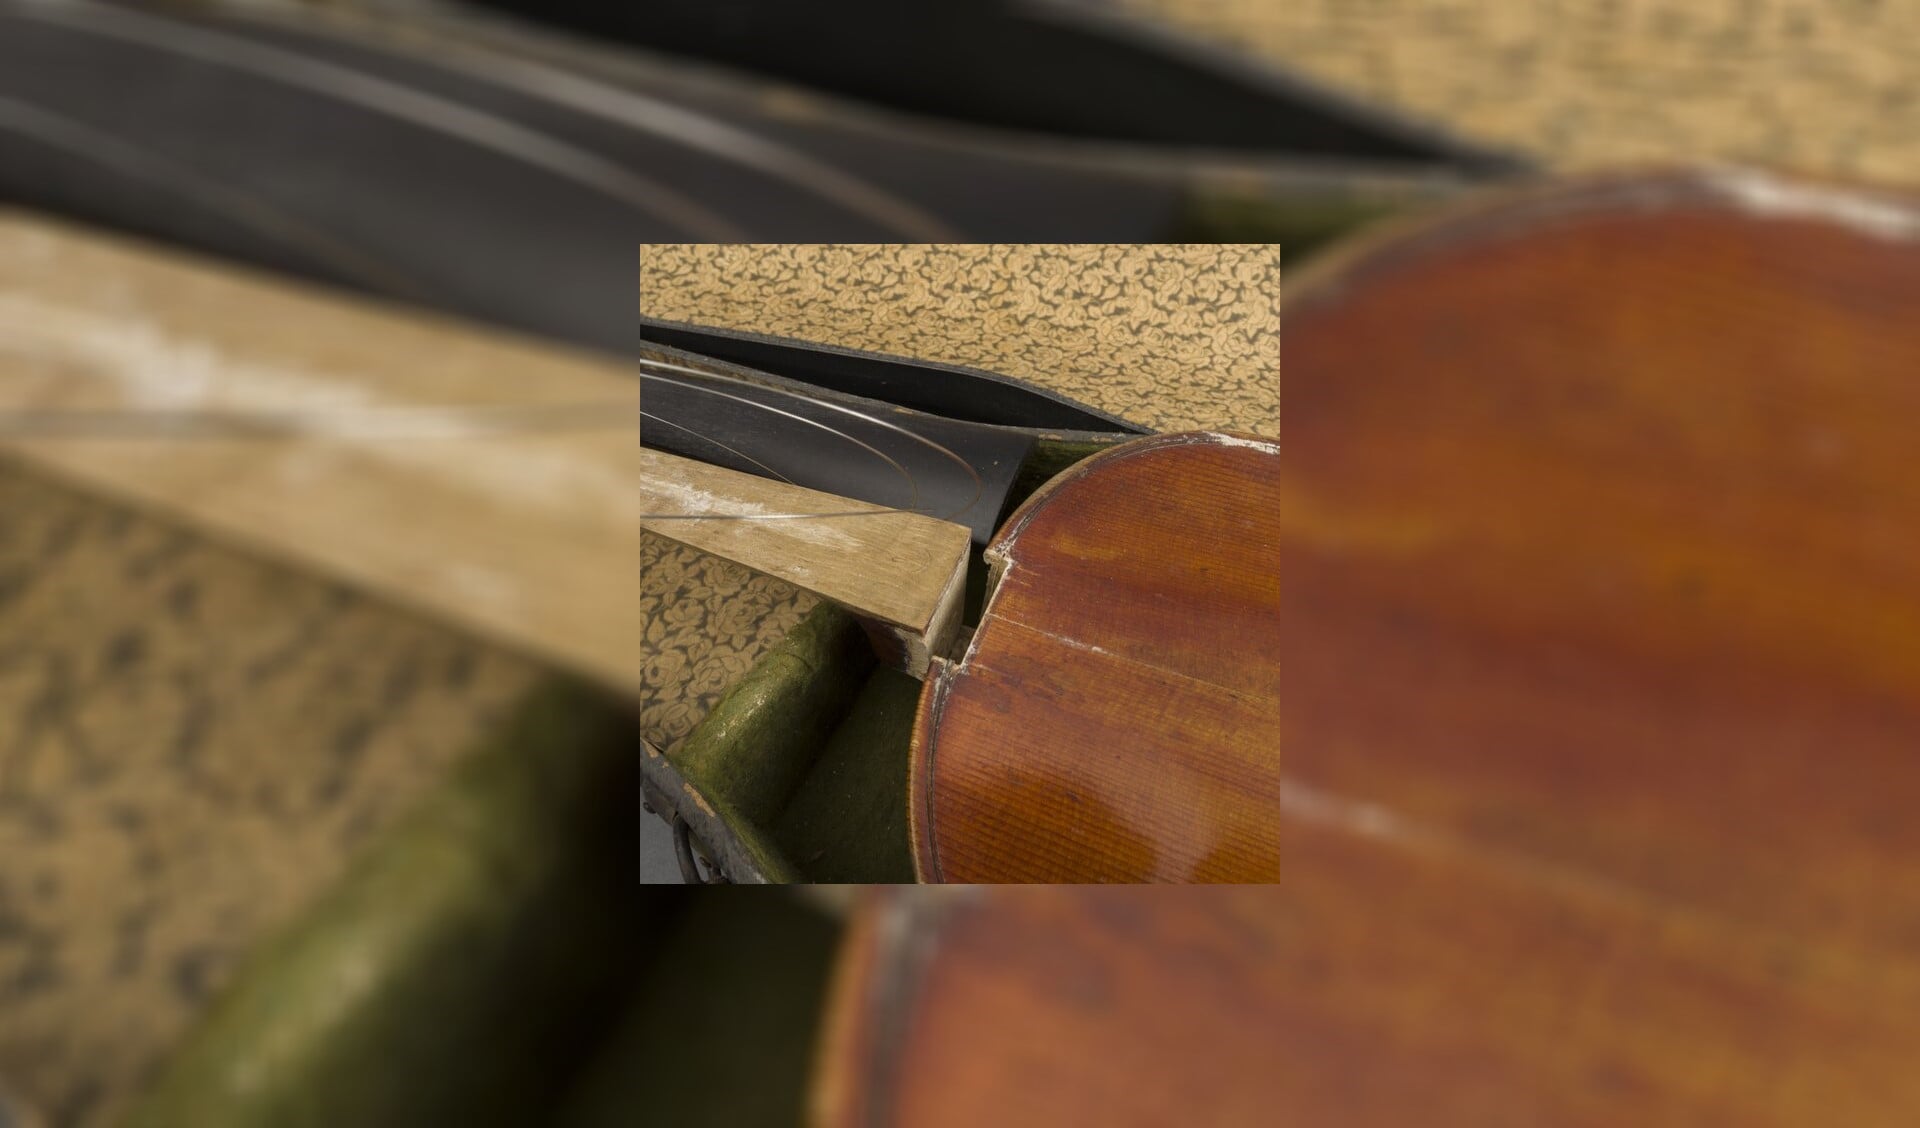 Ondanks beschadigingen bracht de viool uit 1899 toch een recordbedrag op.